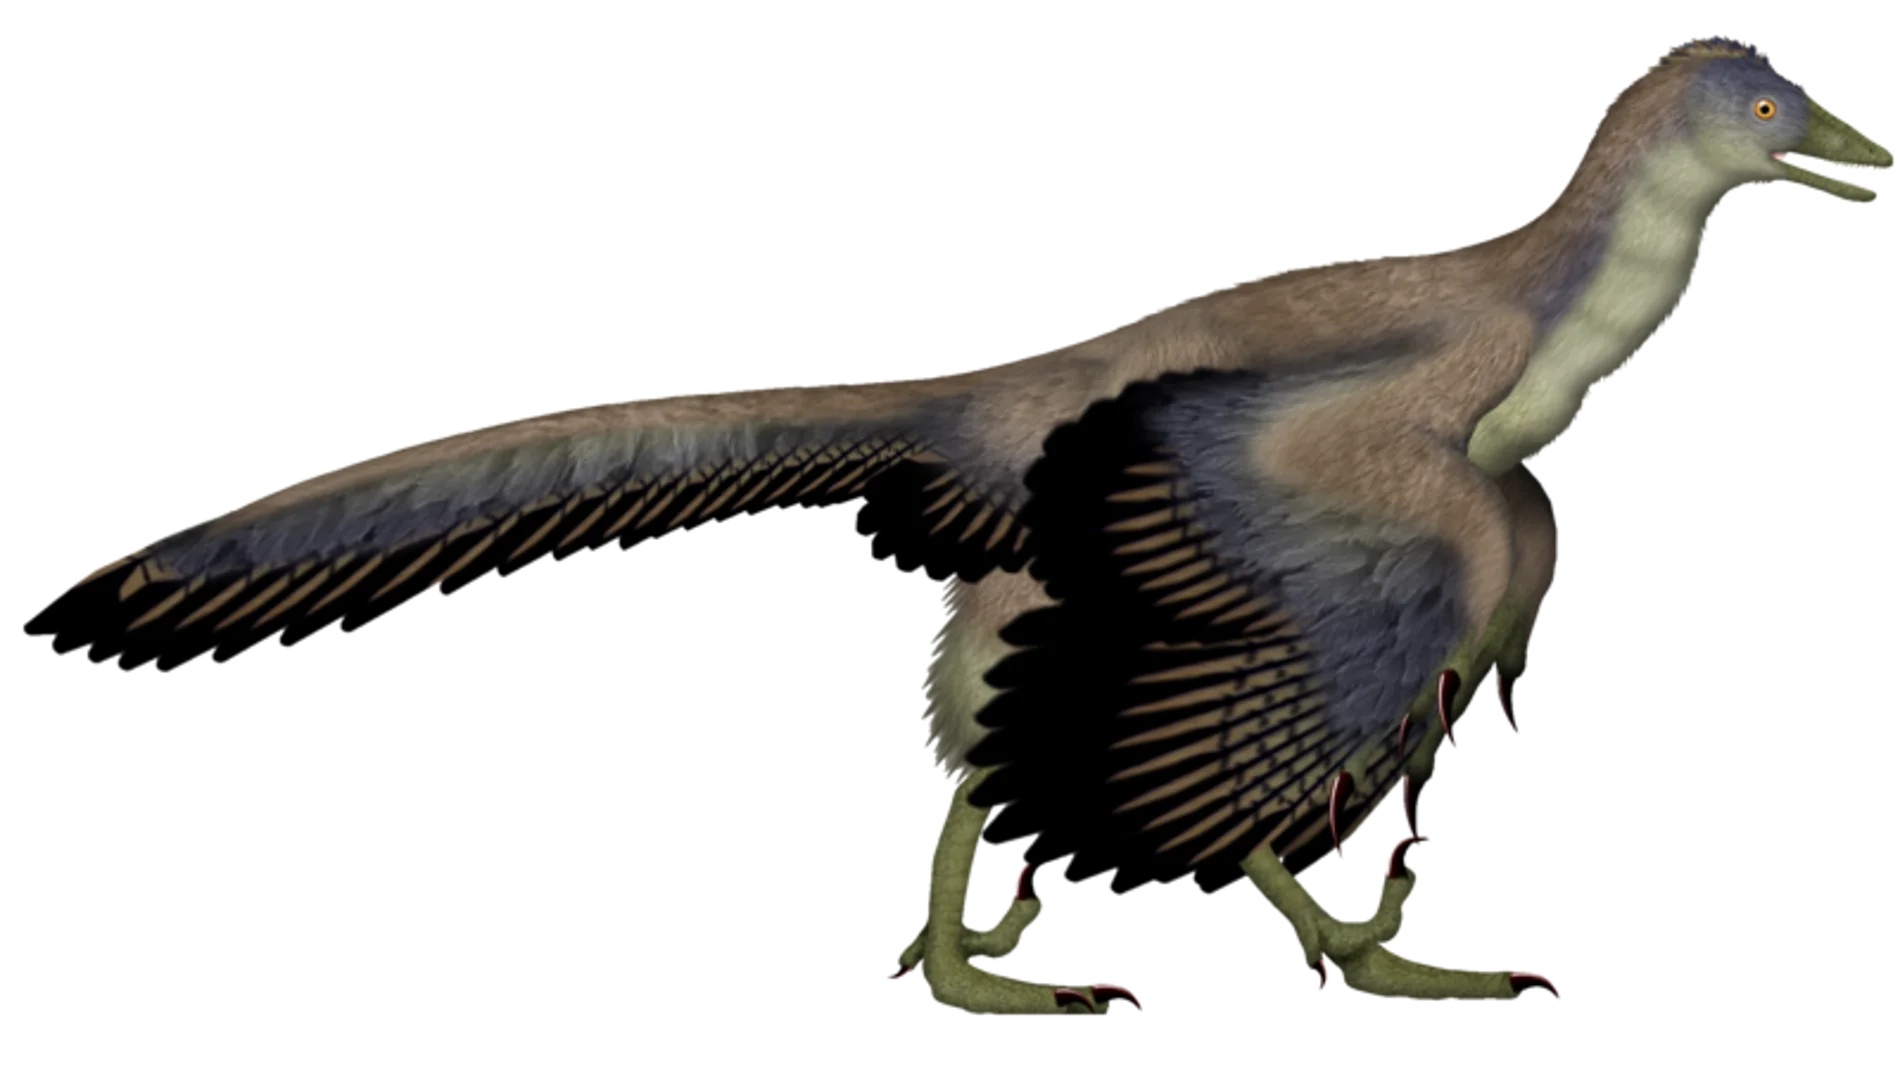 Entre finales del siglo XIX y principios del XXI, el Archaeopteryx fue generalmente aceptado por los paleontólogos como el ave más antigua conocida. El Archaeopteryx vivió en el Jurásico Tardío, hace unos 150 millones de años, en lo que hoy es el sur de Alemania. Las especies más grandes podían alcanzar los 0,5 m de longitud. A pesar de su pequeño tamaño, sus amplias alas y su supuesta capacidad para volar o planear, el Archaeopteryx tenía más en común con otros pequeños dinosaurios mesozoico...